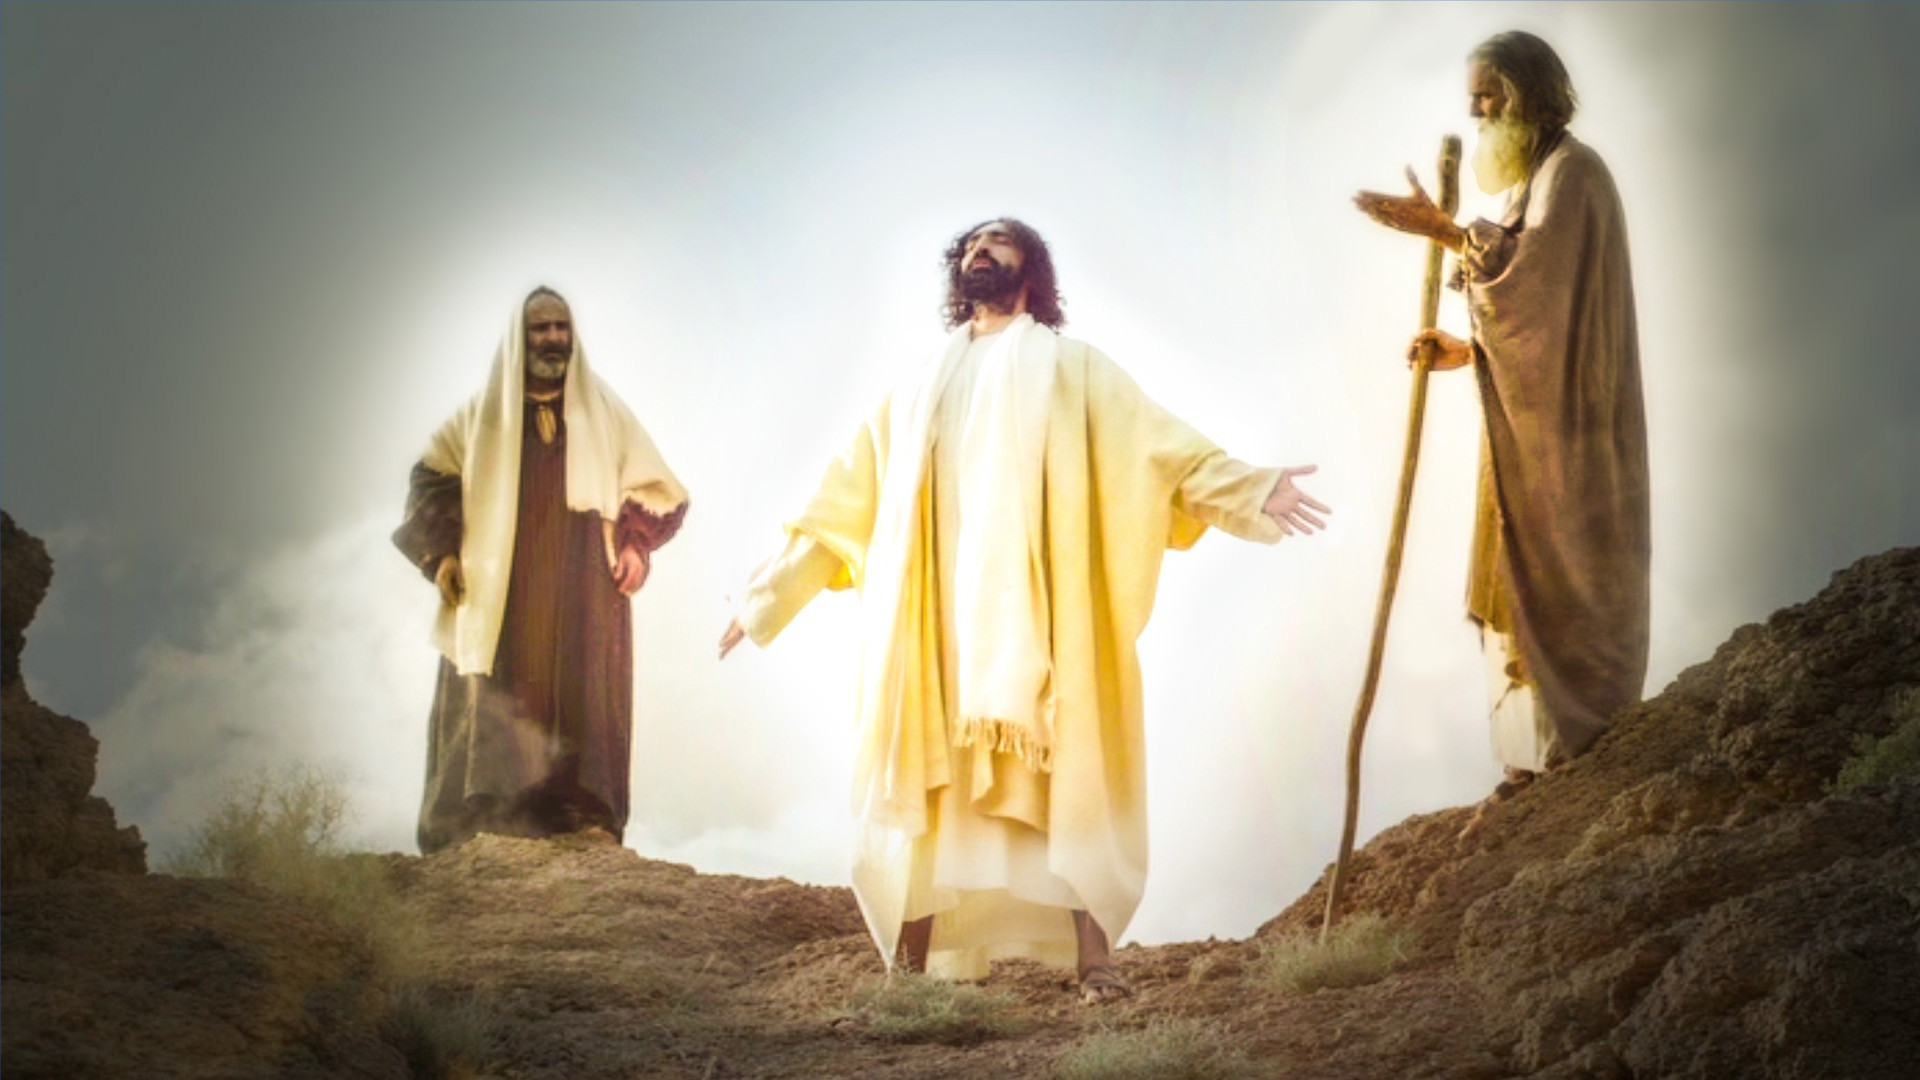 Ngày 06/08: Chúa Giêsu Hiển Dung - Đến với Chúa (Mc 9,2-10)